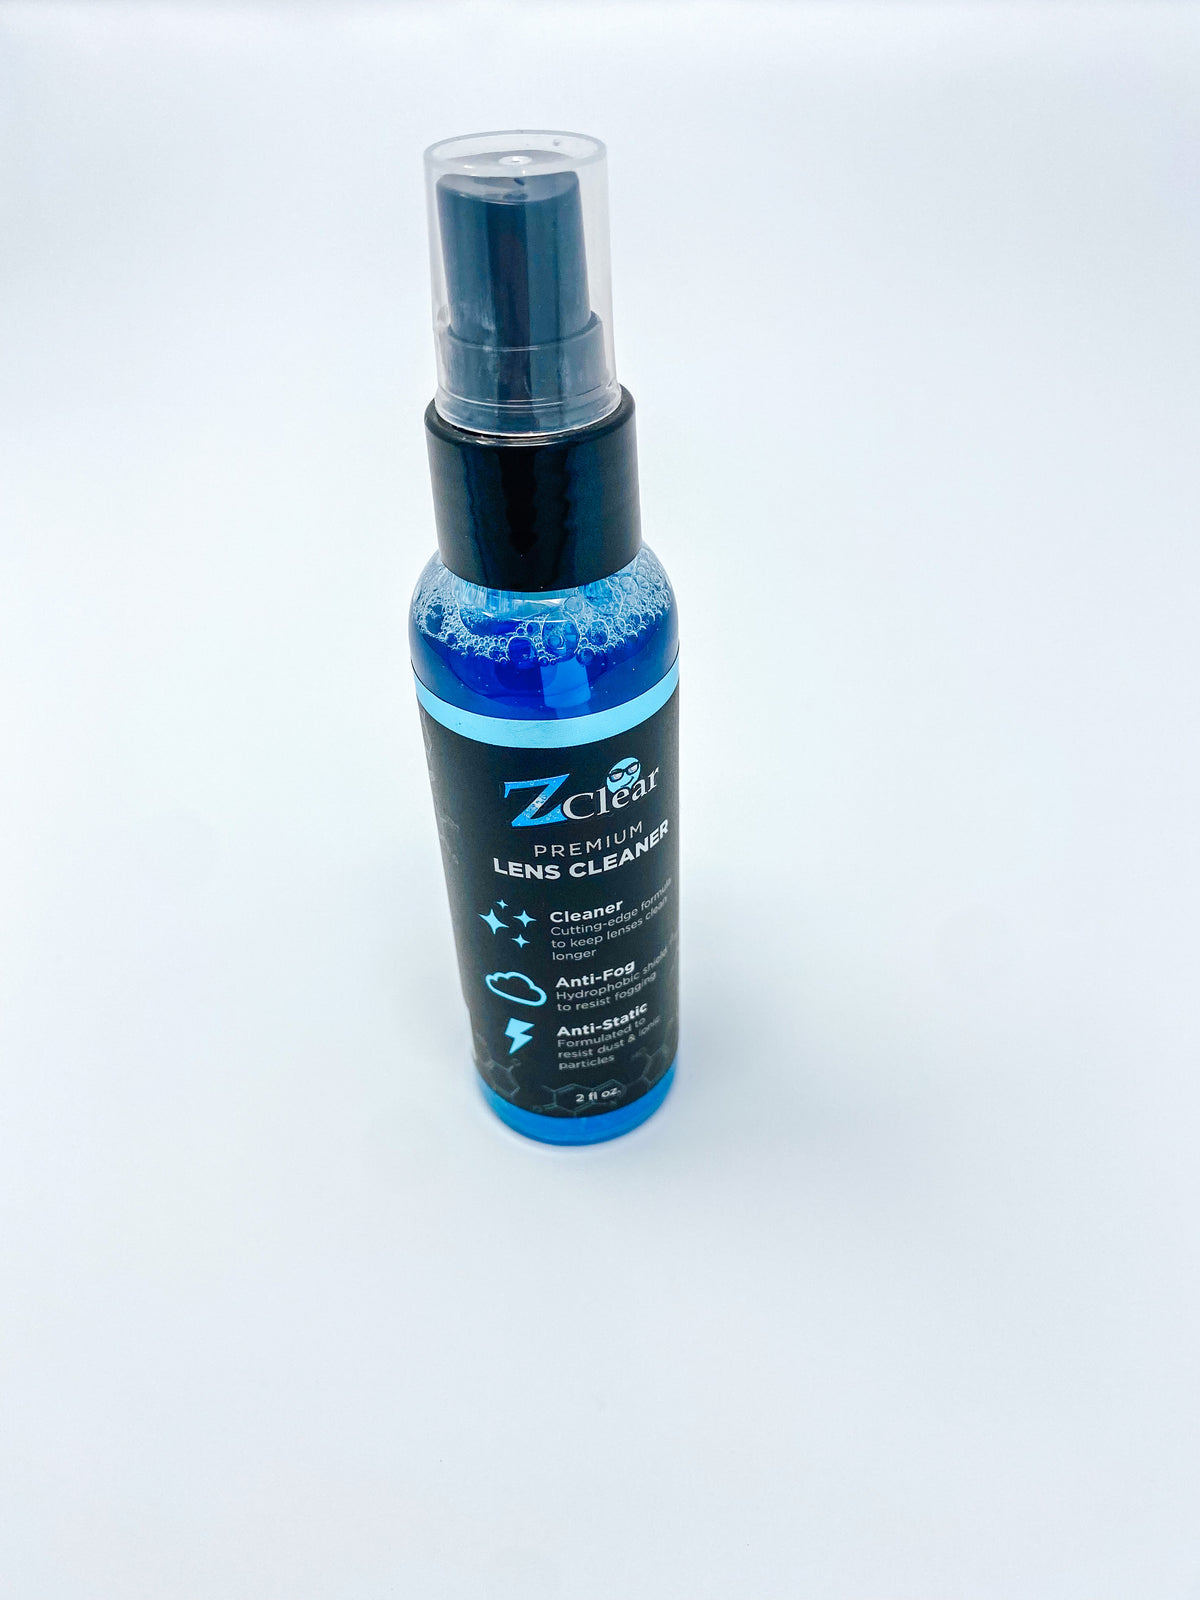 Lens Cleaner / Anti Fog Spray - 2oz